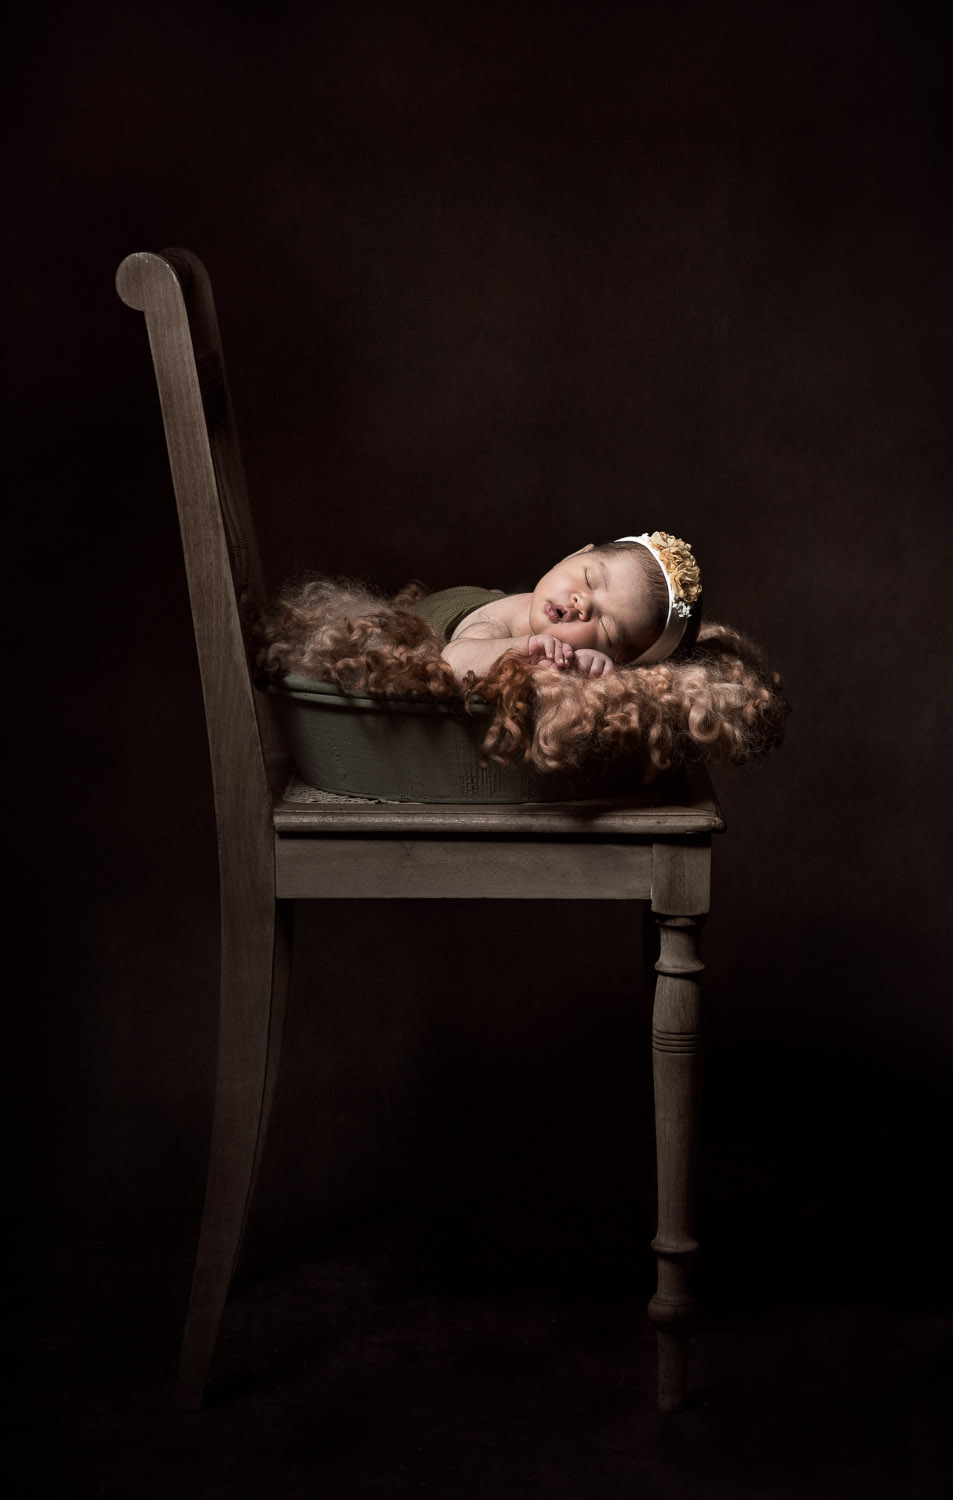 Baby-Newborn-Girl-Chair-Photography-Irene-Chen.jpg